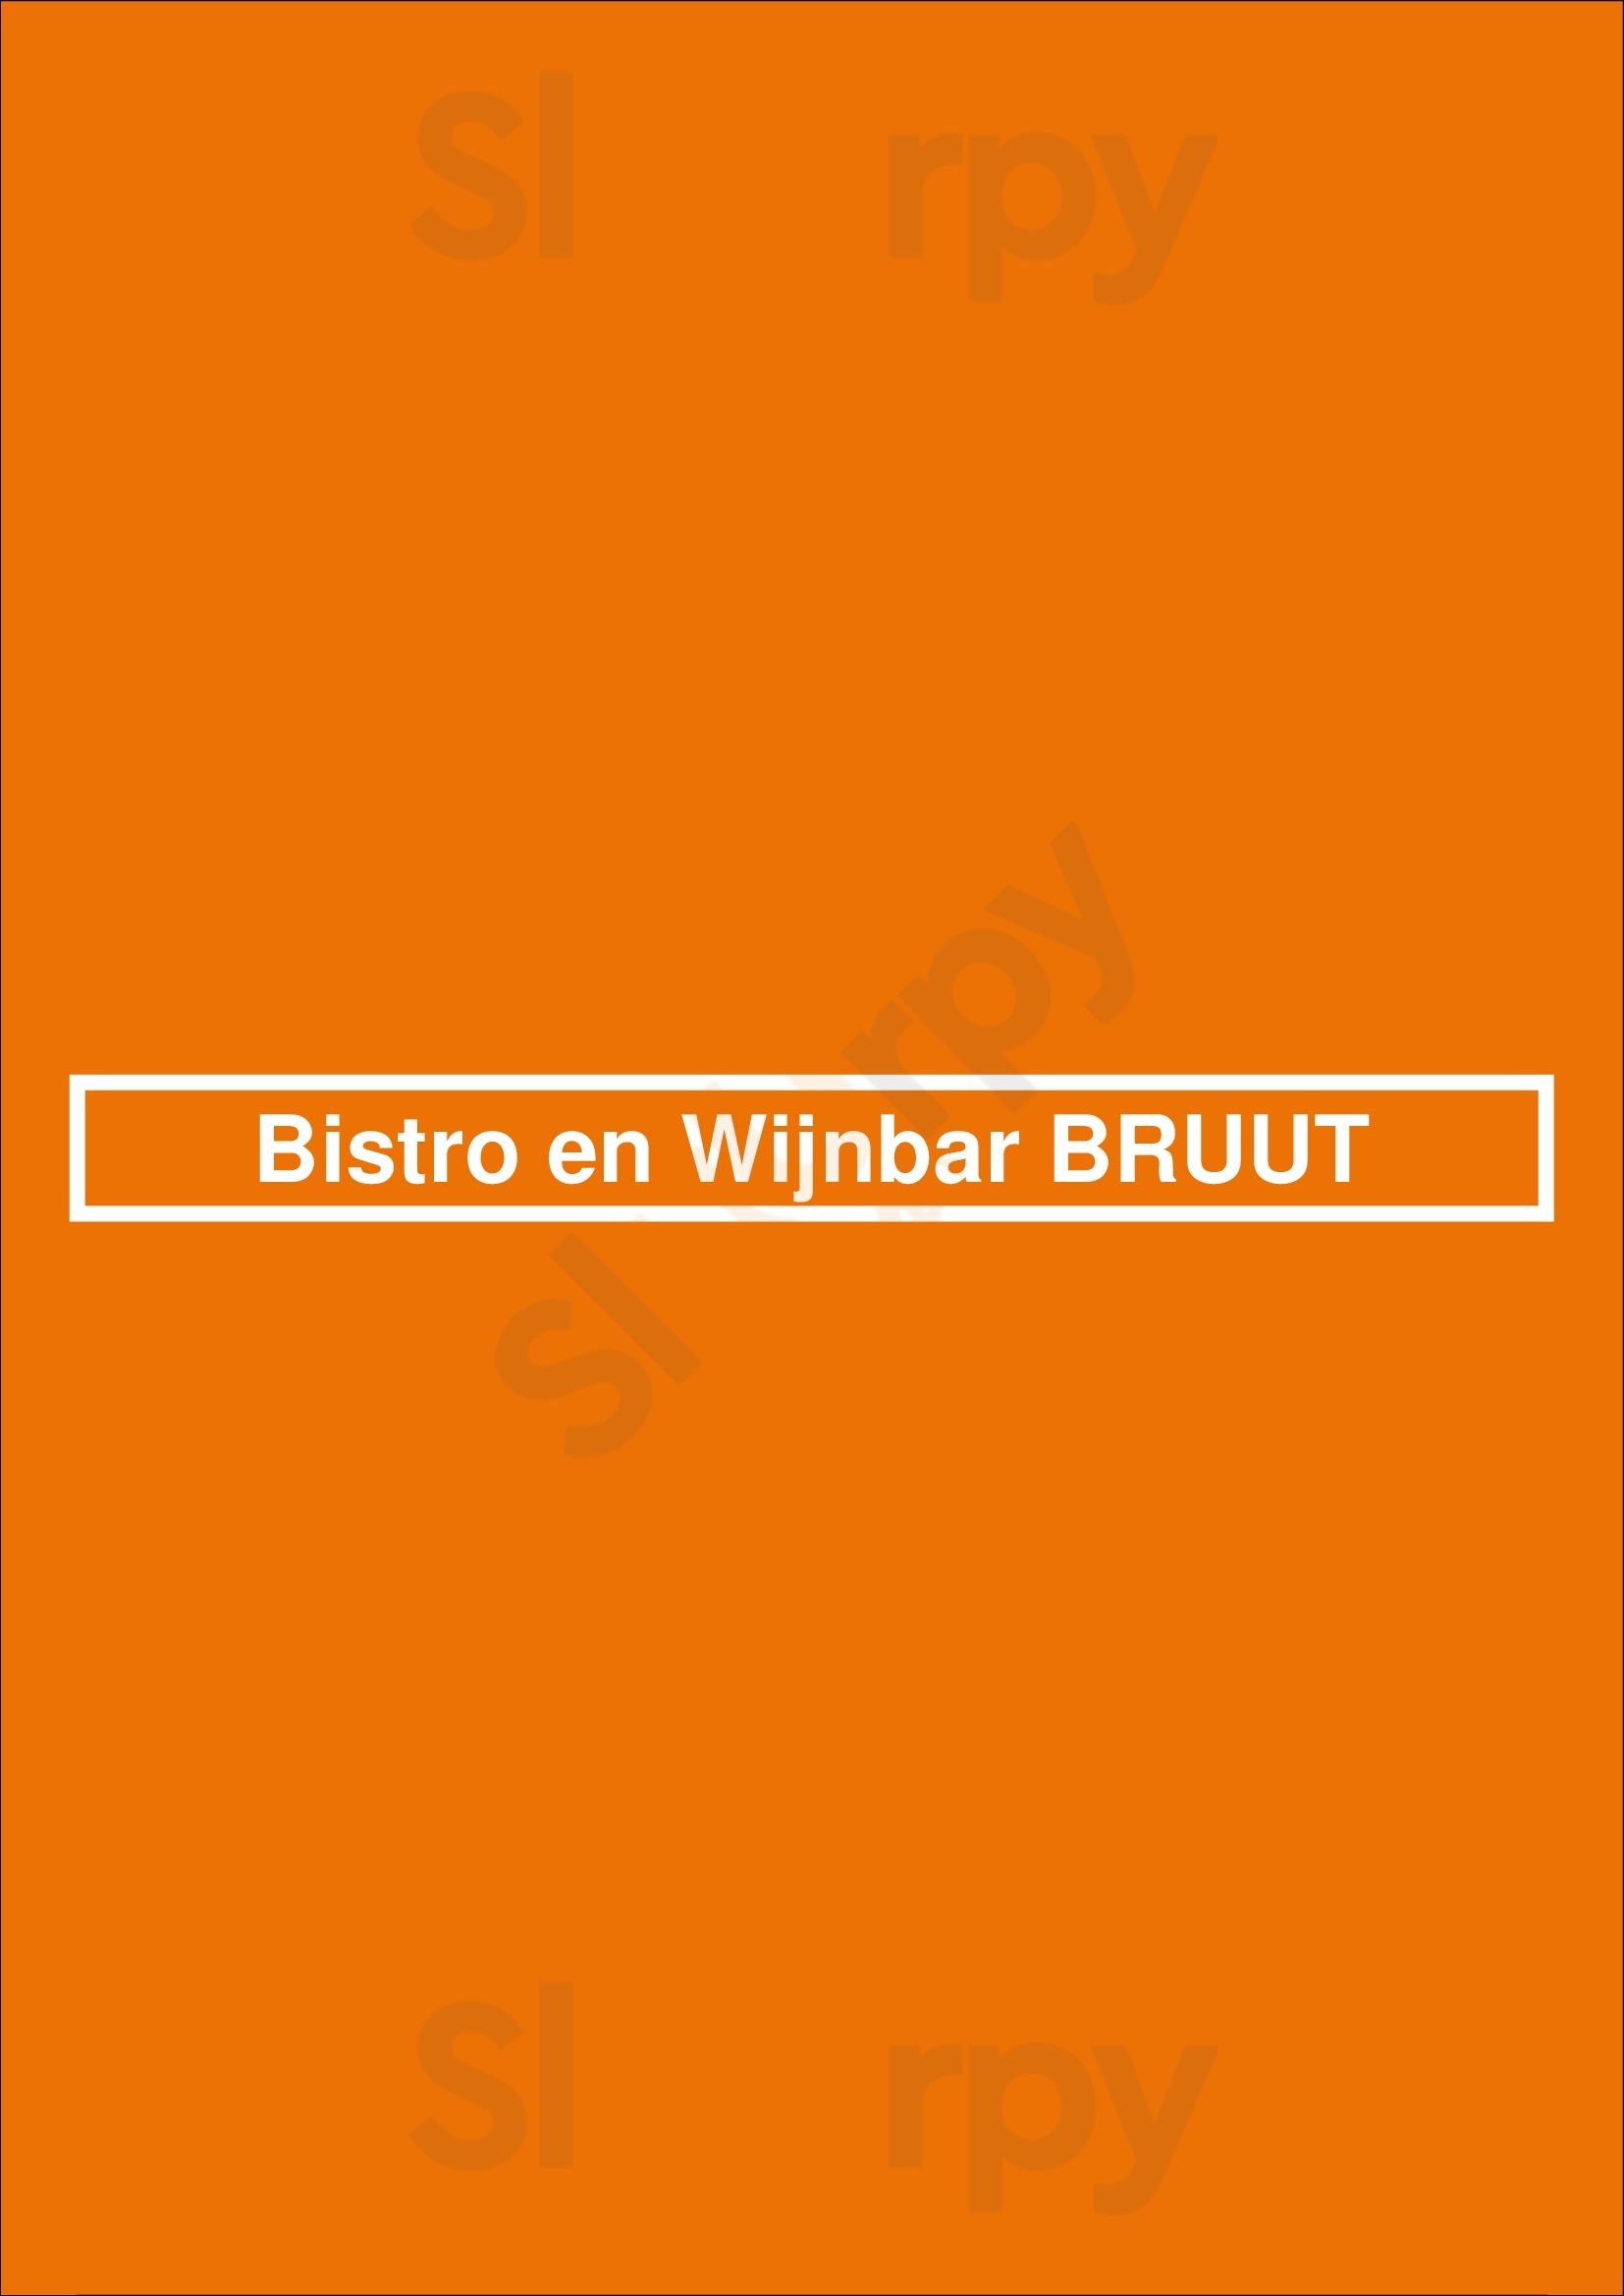 Bistro En Wijnbar Bruut Enschede Menu - 1